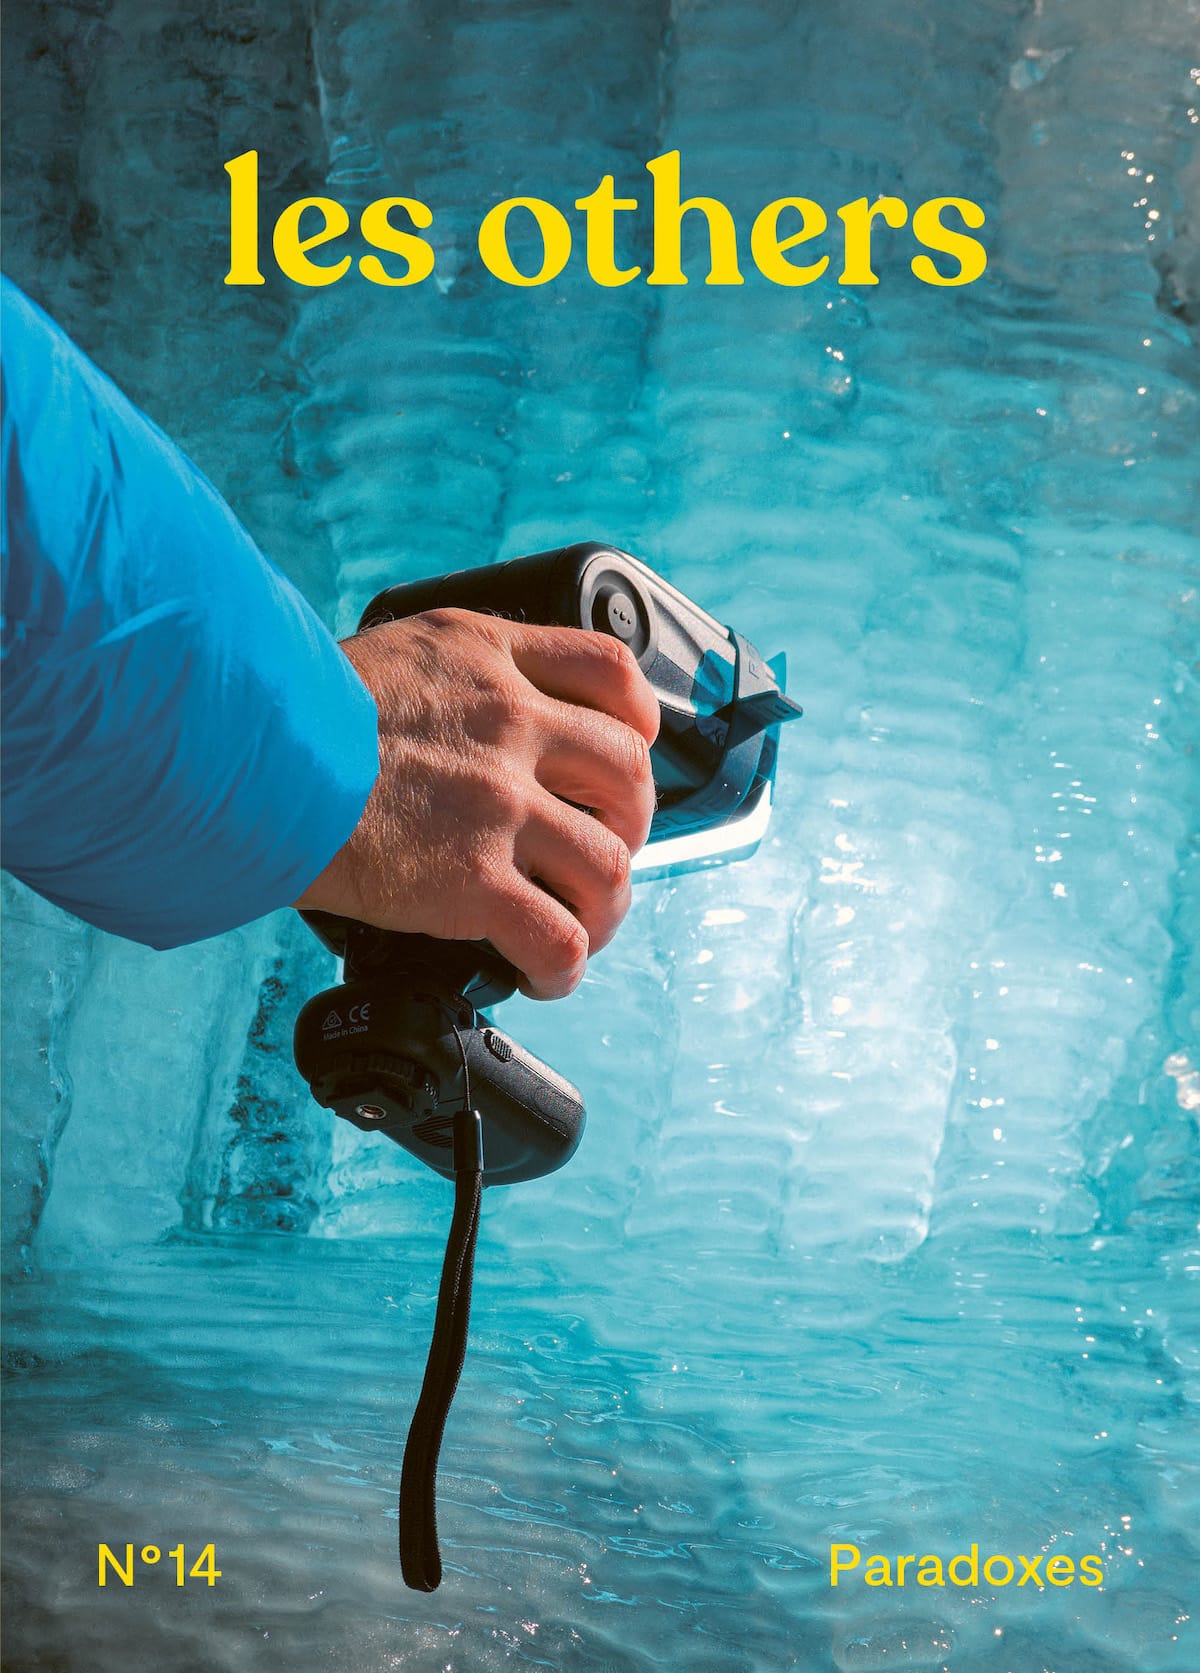 Les Others — Image magazine